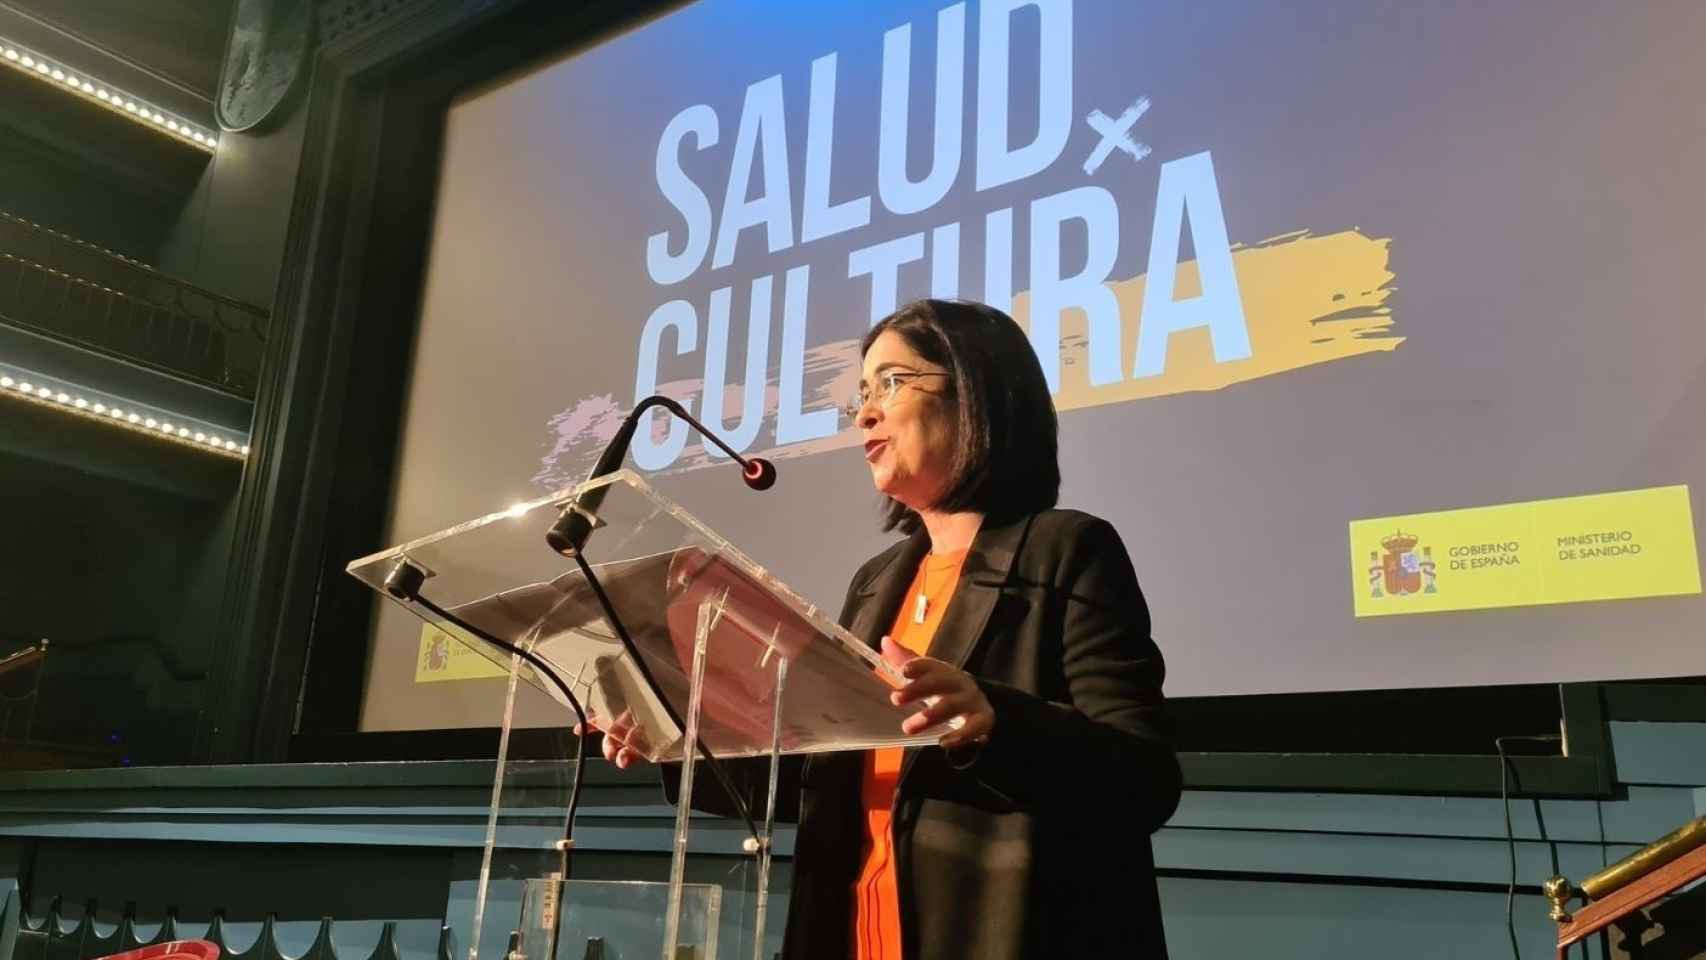 La ministra de Sanidad, Carolina Darias, en los encuentros #SaludXCultura.